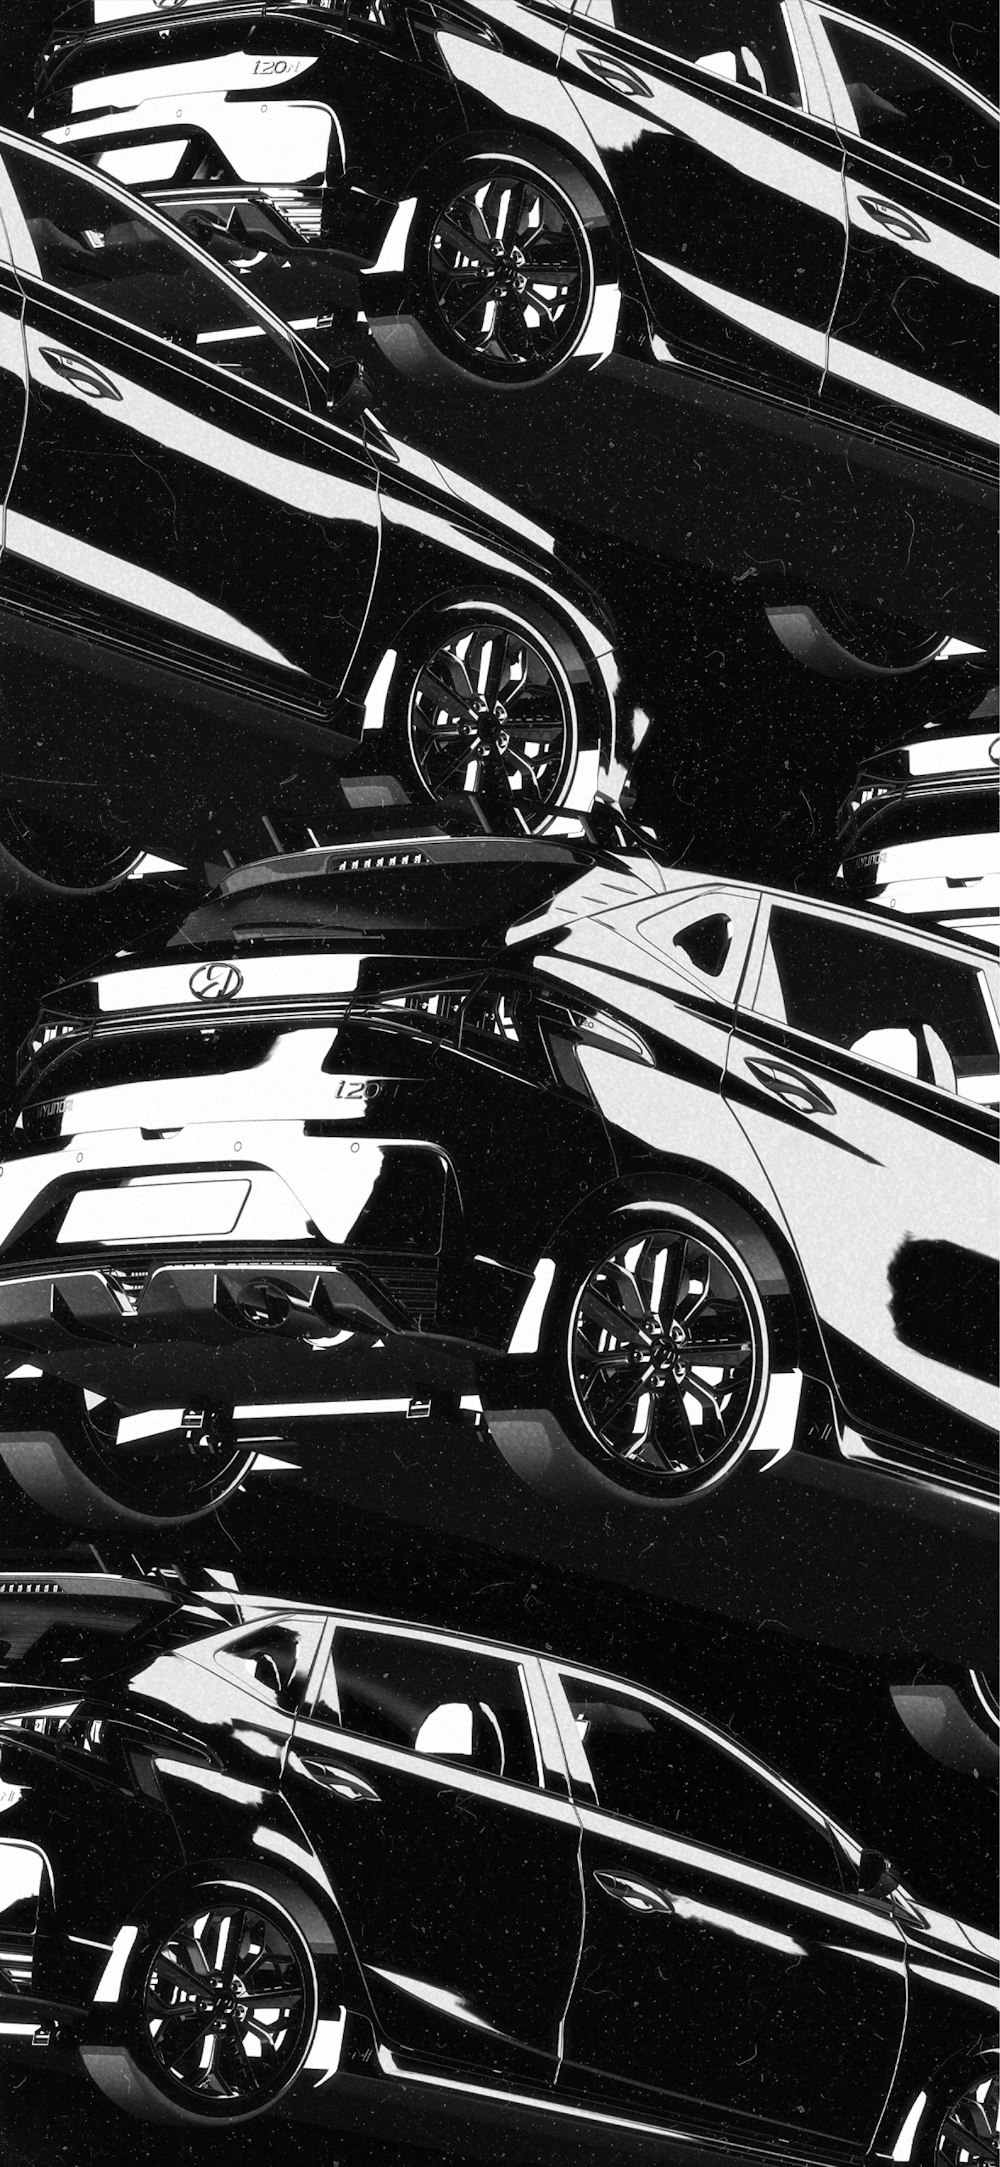 une photo en noir et blanc d’un tas de voitures